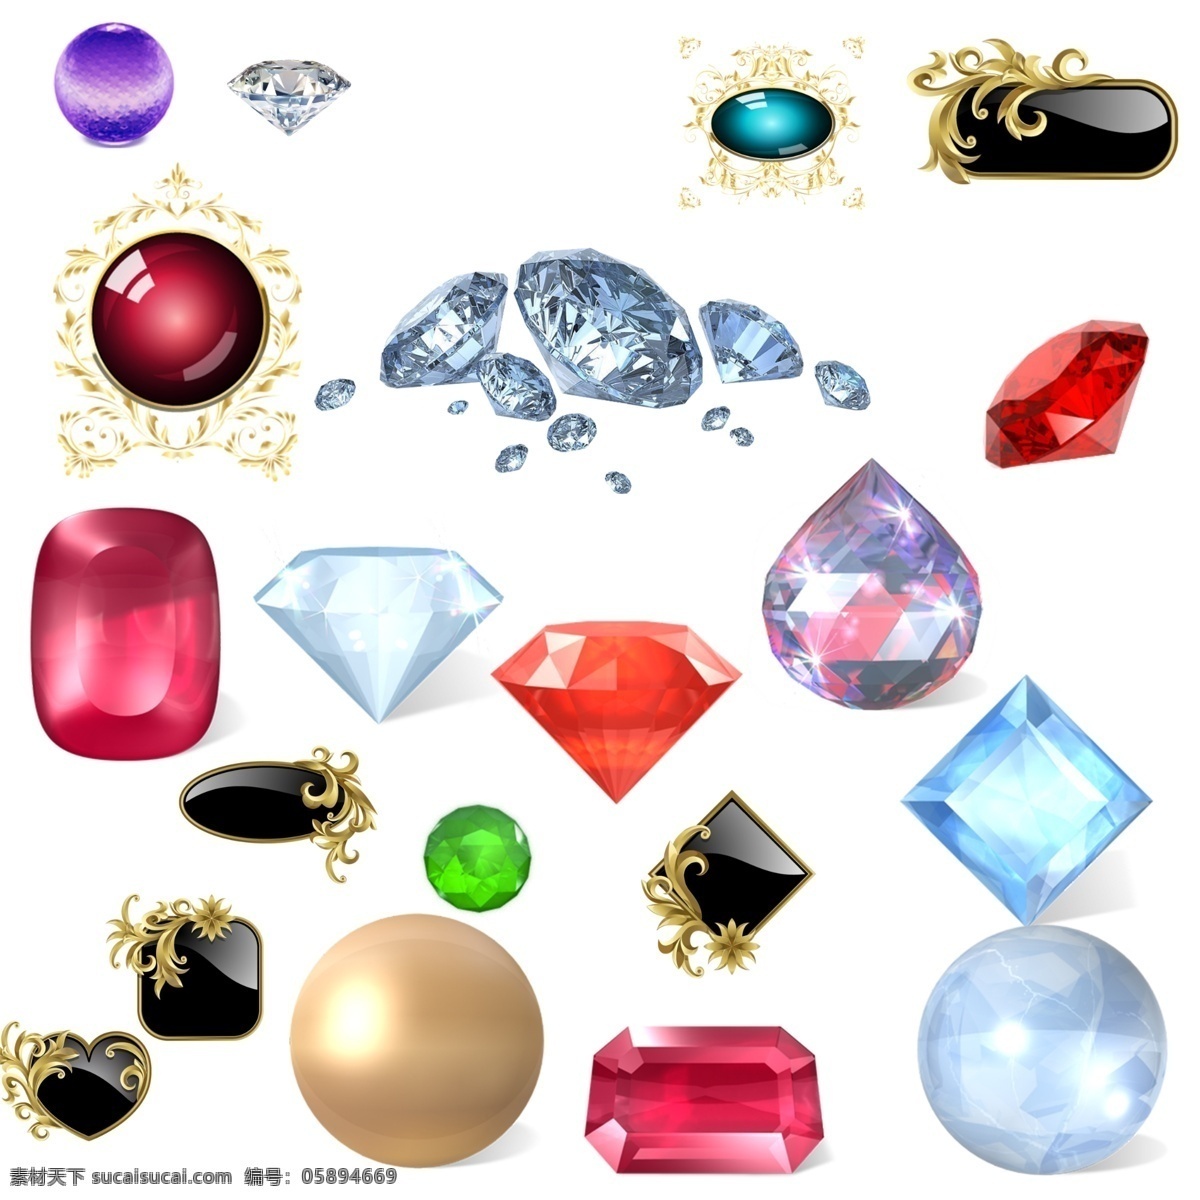 宝石素材 珍珠 宝石 钻石 玛瑙 翡翠 琥珀 黑钻石 金边 猫眼石